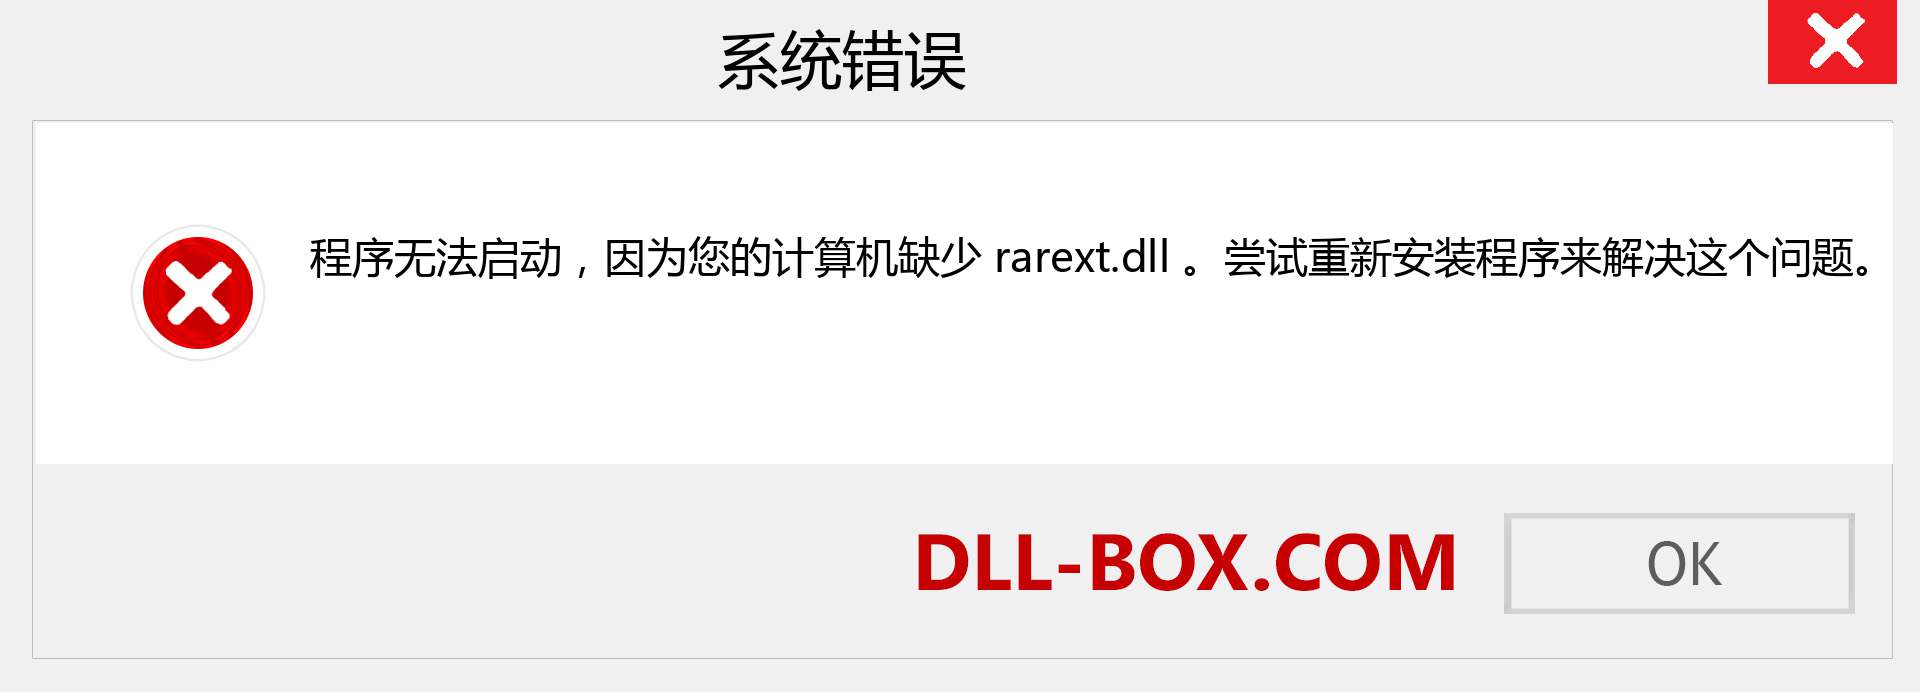 rarext.dll 文件丢失？。 适用于 Windows 7、8、10 的下载 - 修复 Windows、照片、图像上的 rarext dll 丢失错误